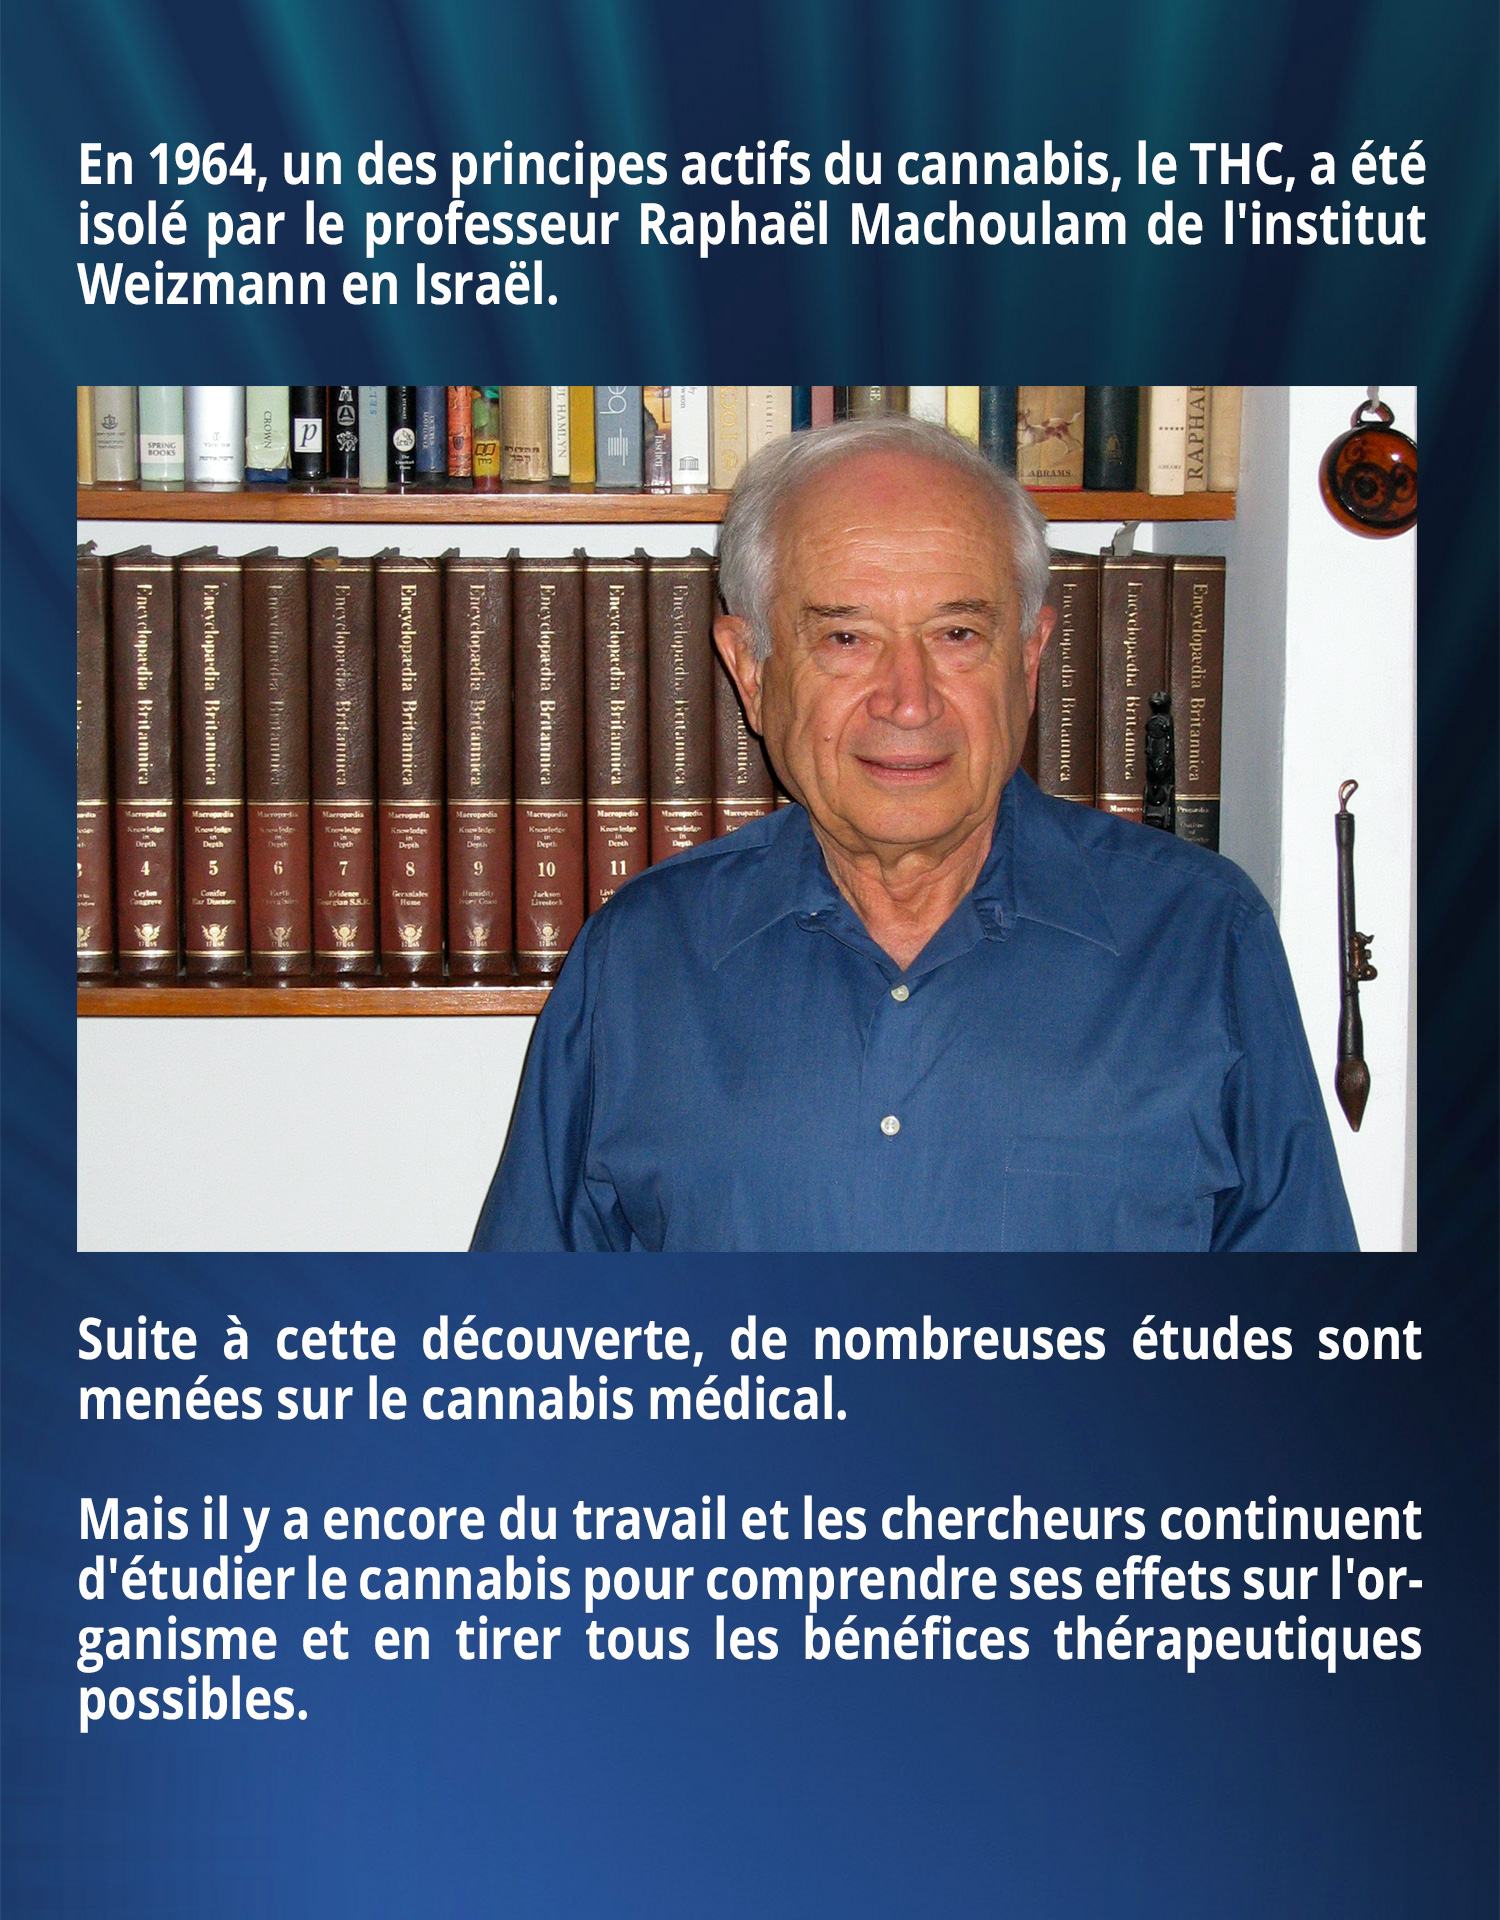 En 1964, un des principes actifs du cannabis, le THC, a été isolé par le professeur Raphaël Machoulam de l'institut Weizmann en Israël. Suite à cette découverte, de nombreuses études sont menées sur le cannabis médical. Mais il y a encore du travail et les chercheurs continuent d'étudier le cannabis pour comprendre ses effets sur l'organisme et en tirer tous les bénéfices thérapeutiques possibles.